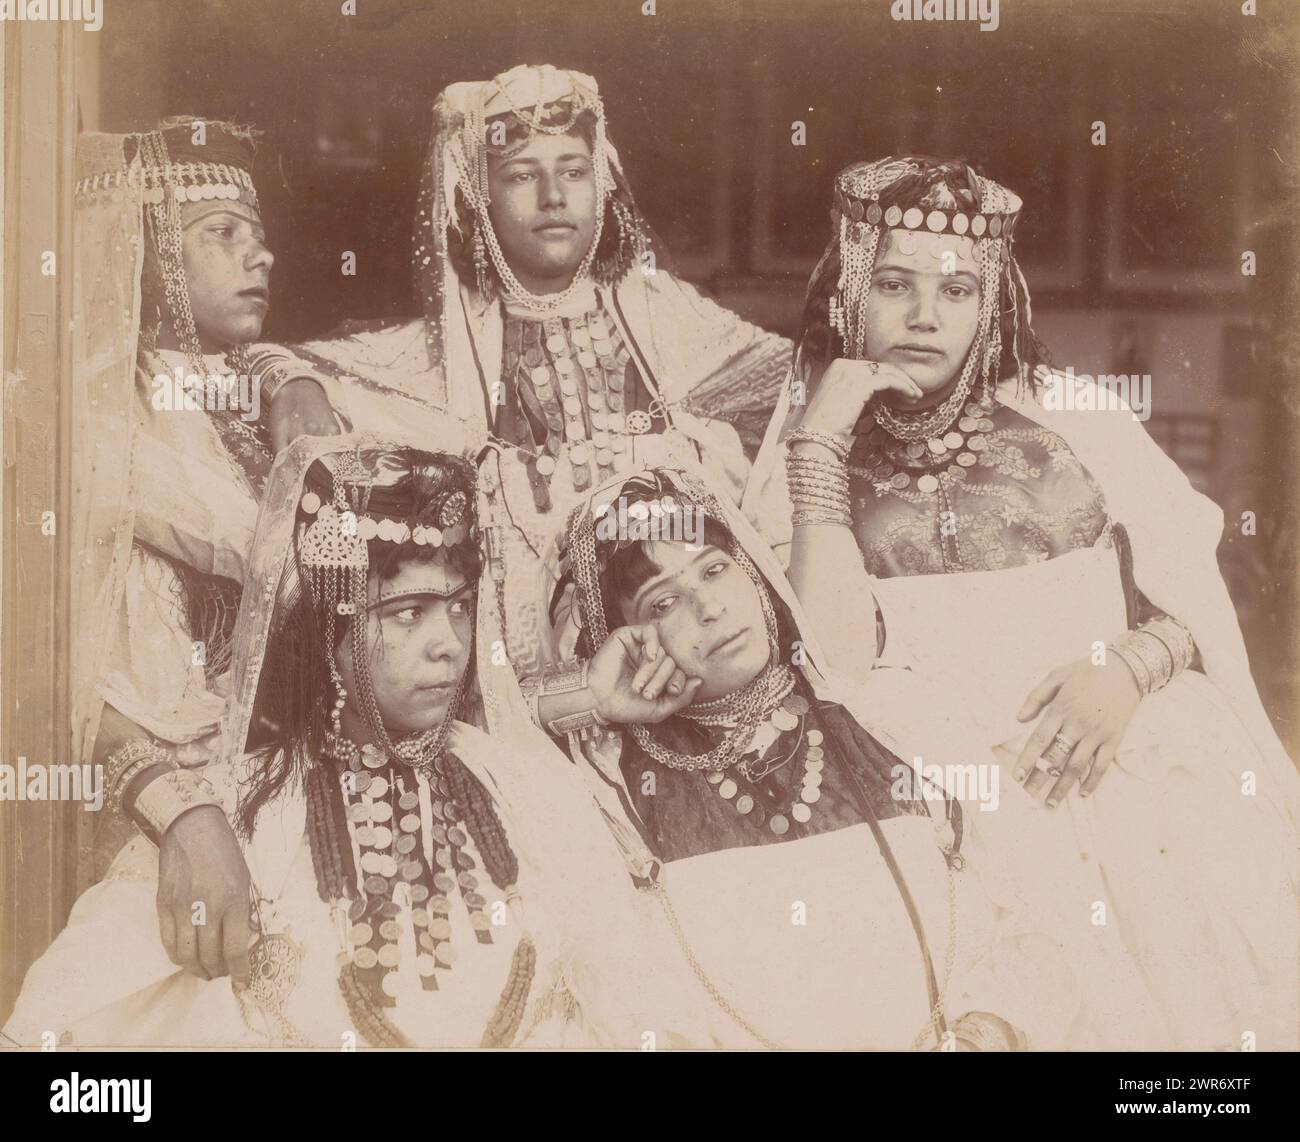 Portrait de groupe de cinq femmes Ouled Naïl inconnues en Algérie, Alger, groupe de filles d'Ouled Nail à Biskra (titre sur objet), anonyme, Algerije, 1890 - 1930, baryta paper, hauteur 247 mm × largeur 317 mm, photographie Banque D'Images